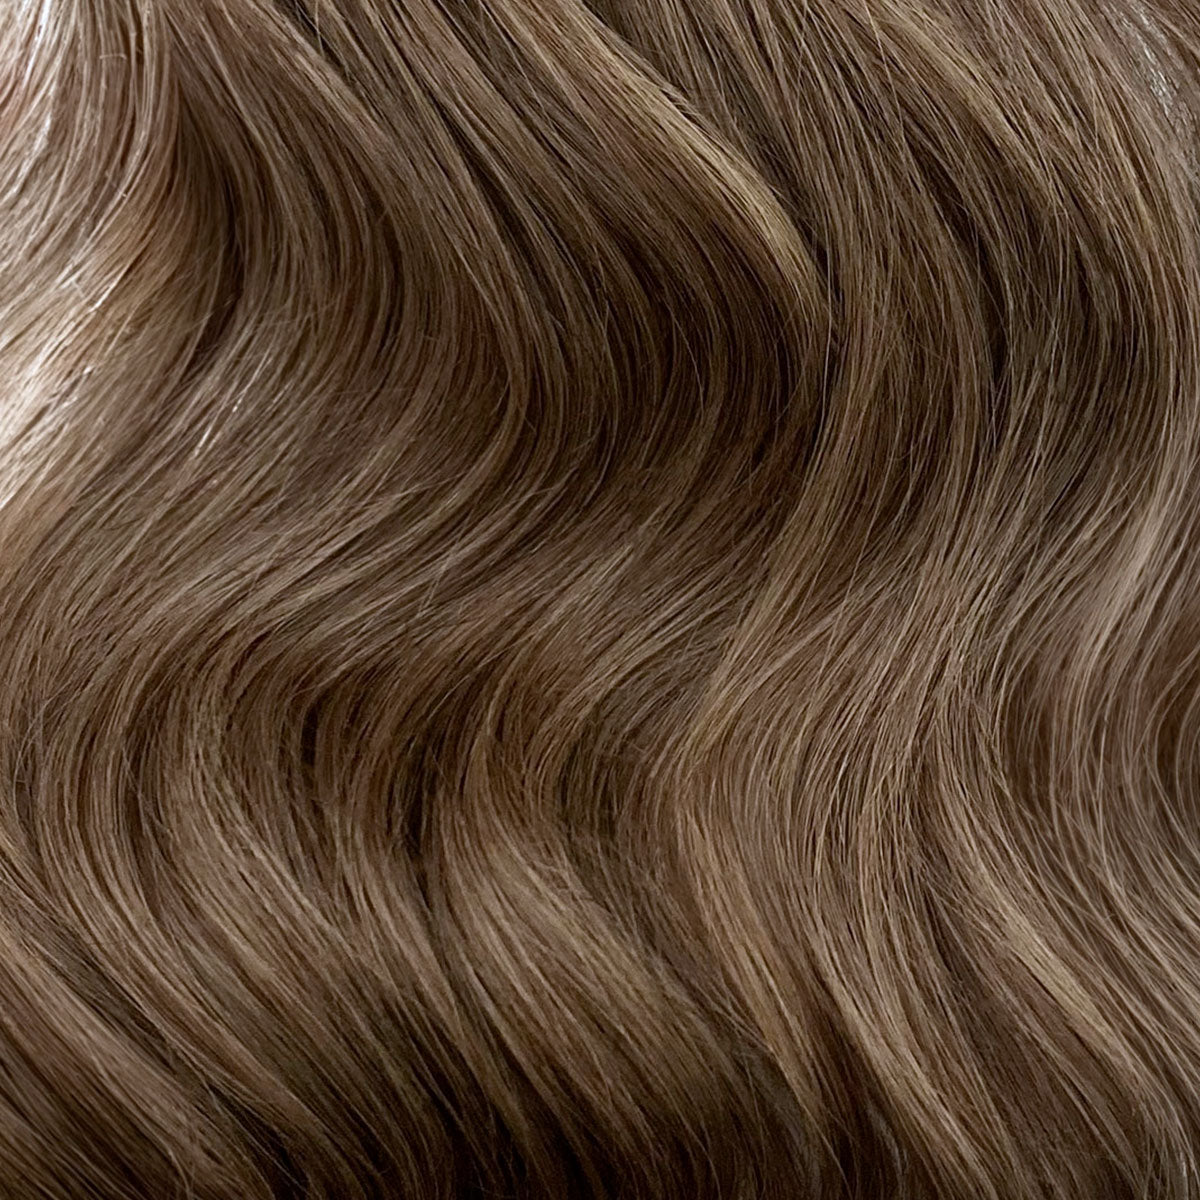 Ponytail Hair Extension #10 Caramel